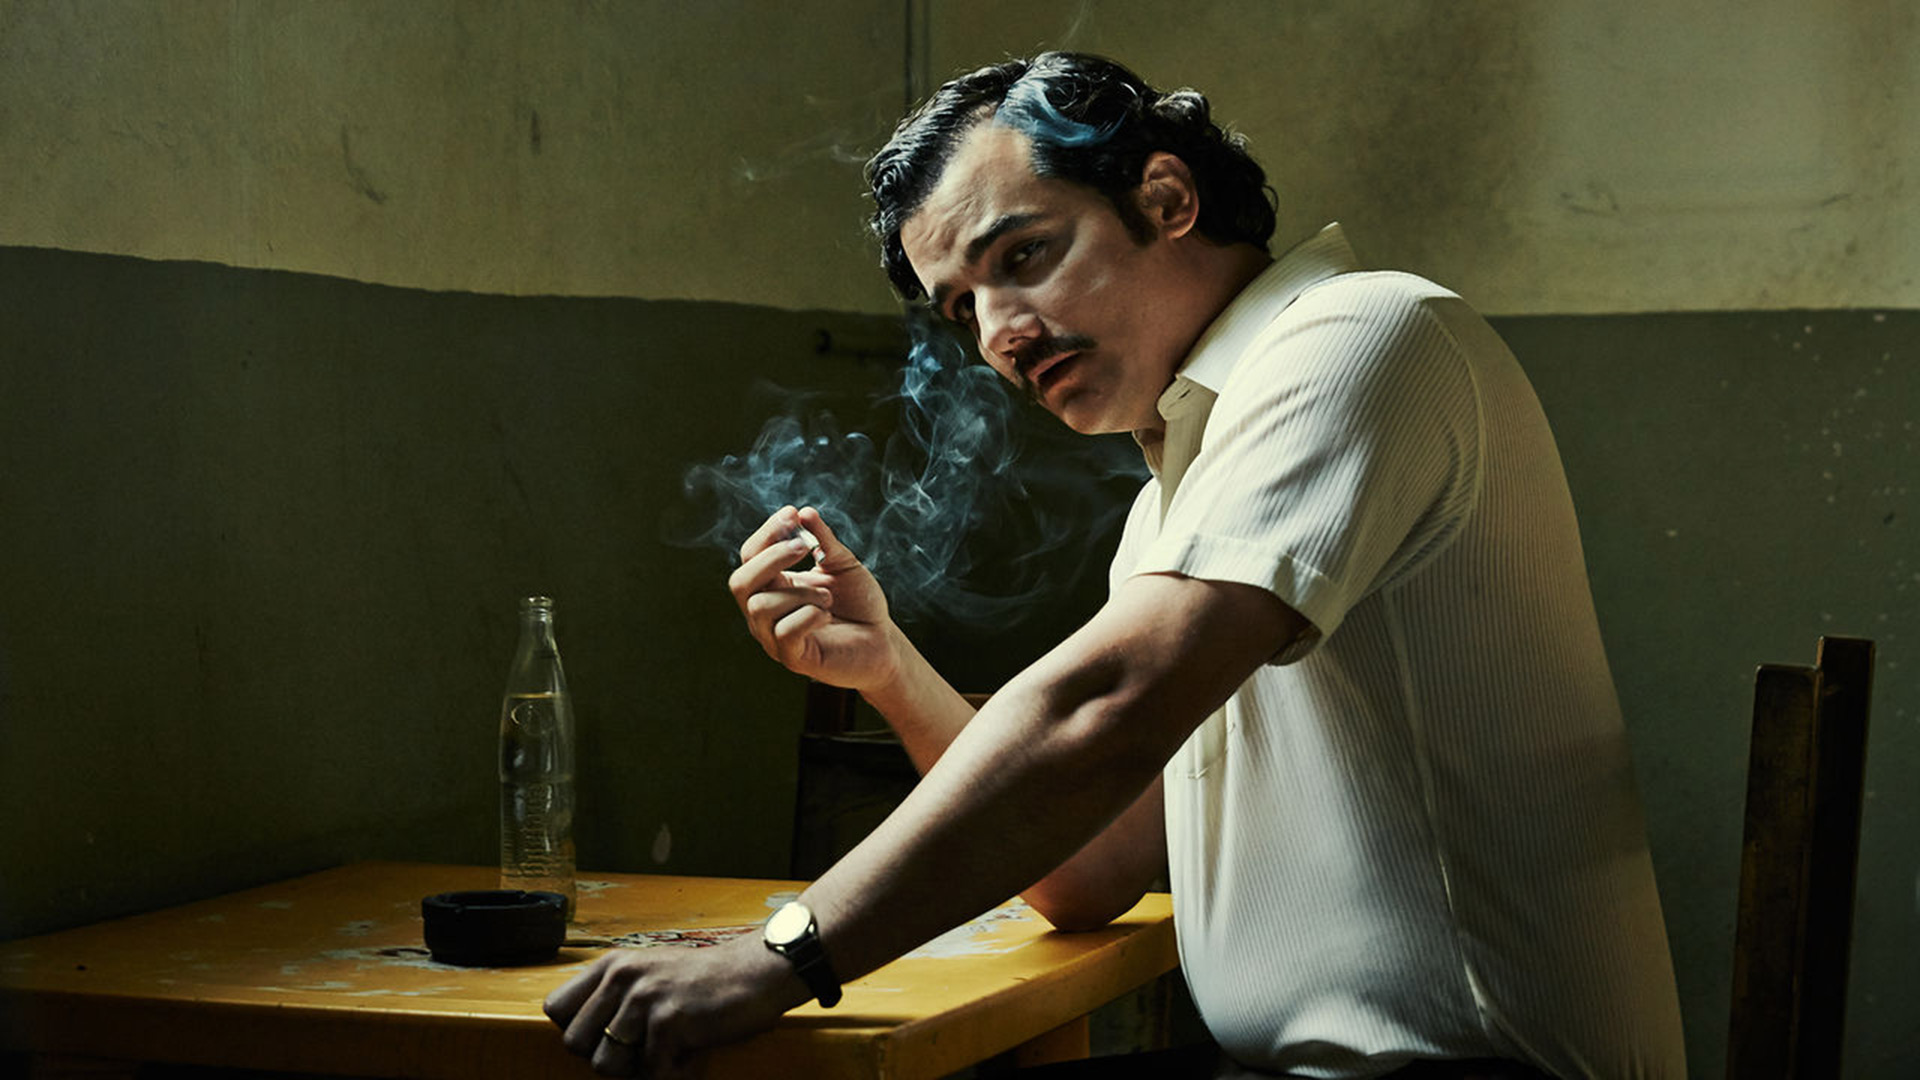 El hermano de Pablo Escobar demanda a Netflix 1.000 millones de dólares